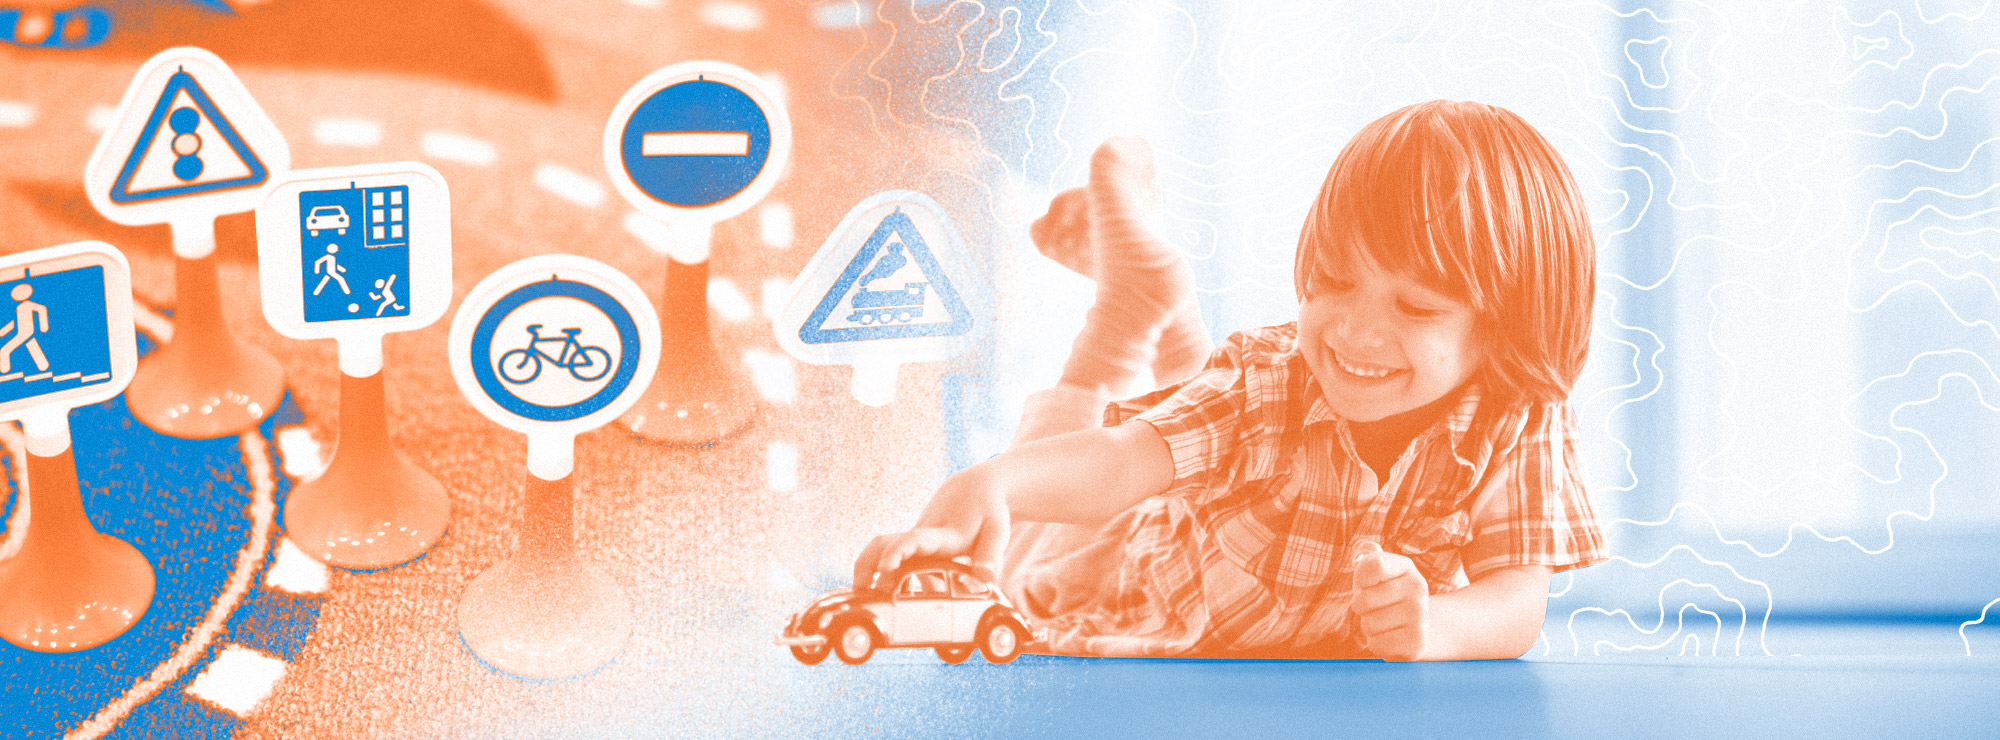 Полноразмерная обложка поста на тему: Как рассказать ребёнку о правилах дорожного движения